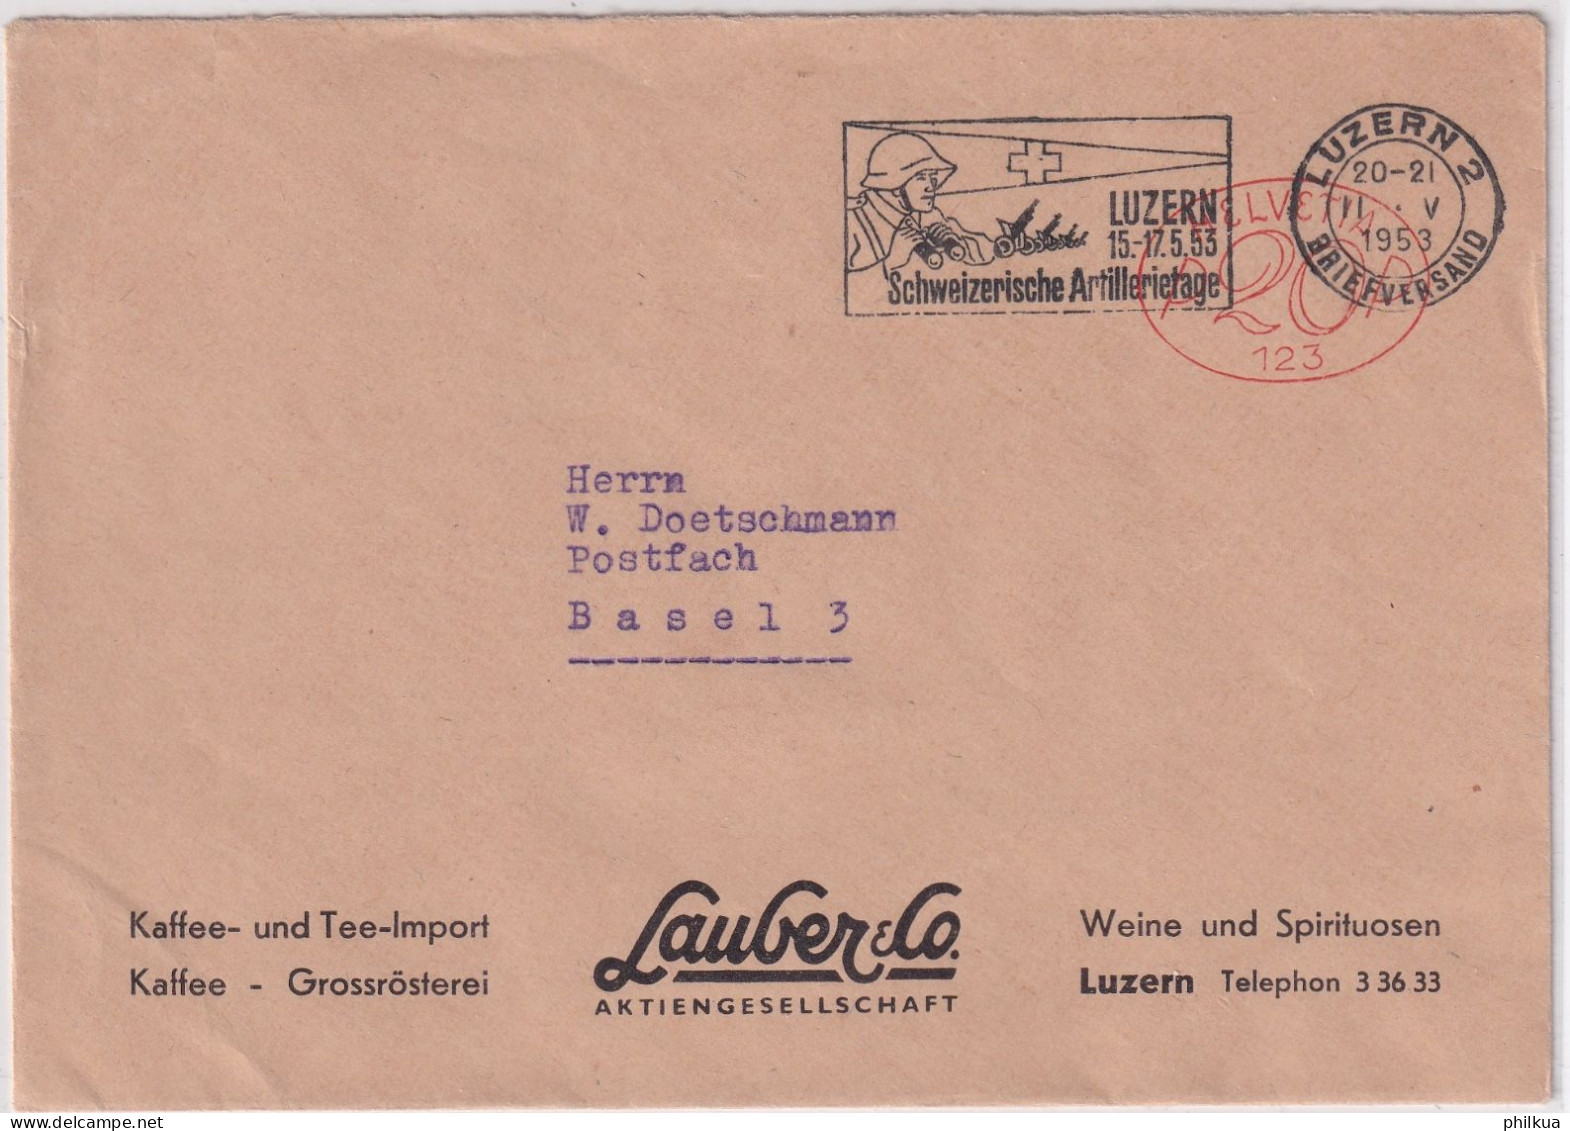 20 Rp. Freistempel Auf Firmenbrief Kaffee- Und Tee-Import Lauber & Co LUZERN Flagge Schweizer Artillerietage 1953 - Postage Meters